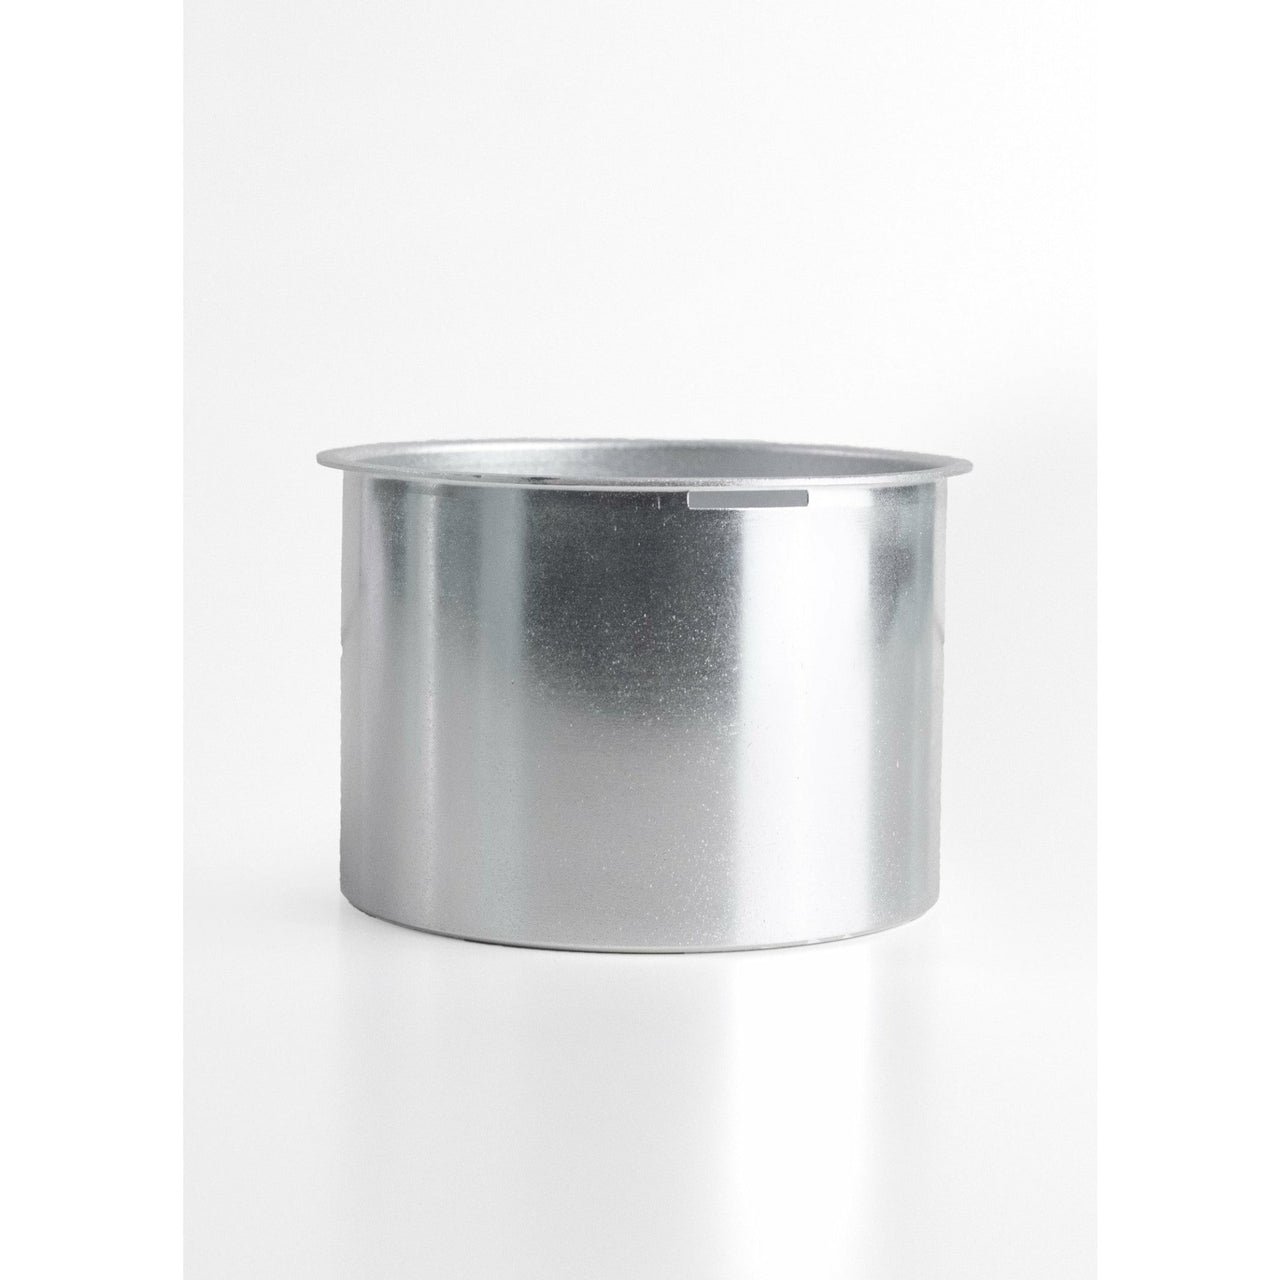 InLei® Spare Aluminum Pot For InLei® Wax Warmer - inlei.com